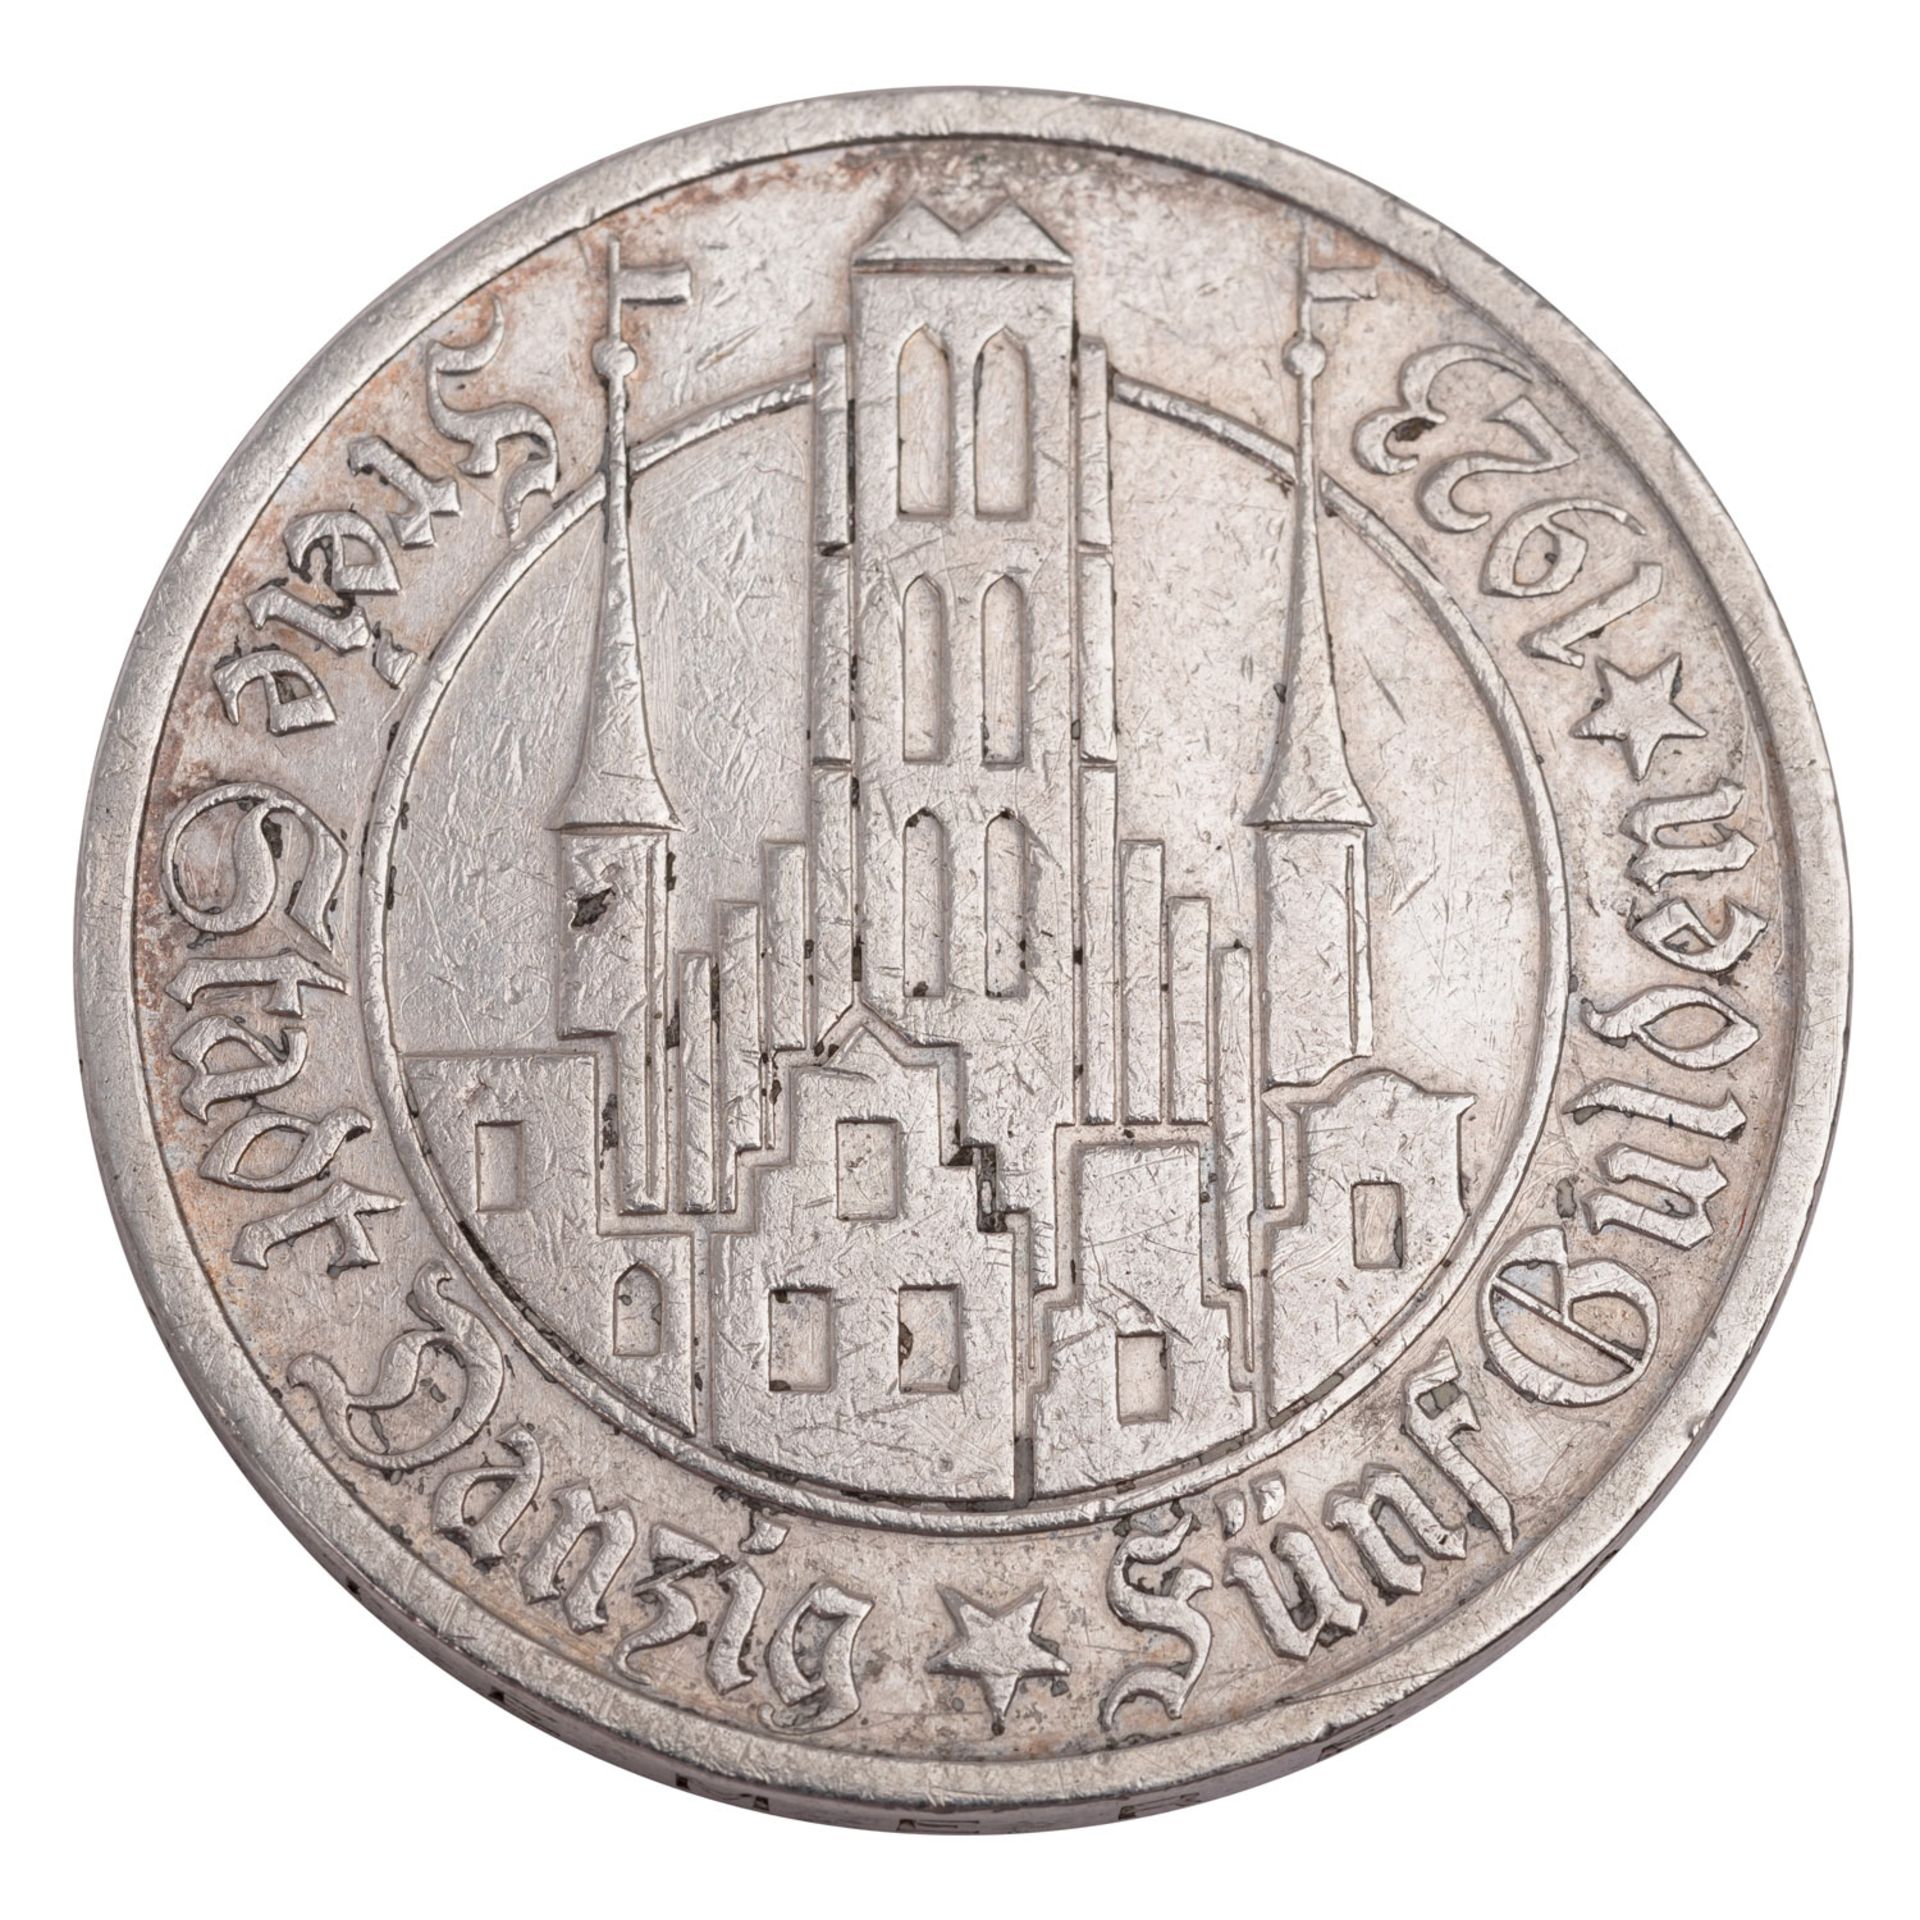 Freie Stadt Danzig - 5 Gulden 1923 Utrecht - Image 2 of 2